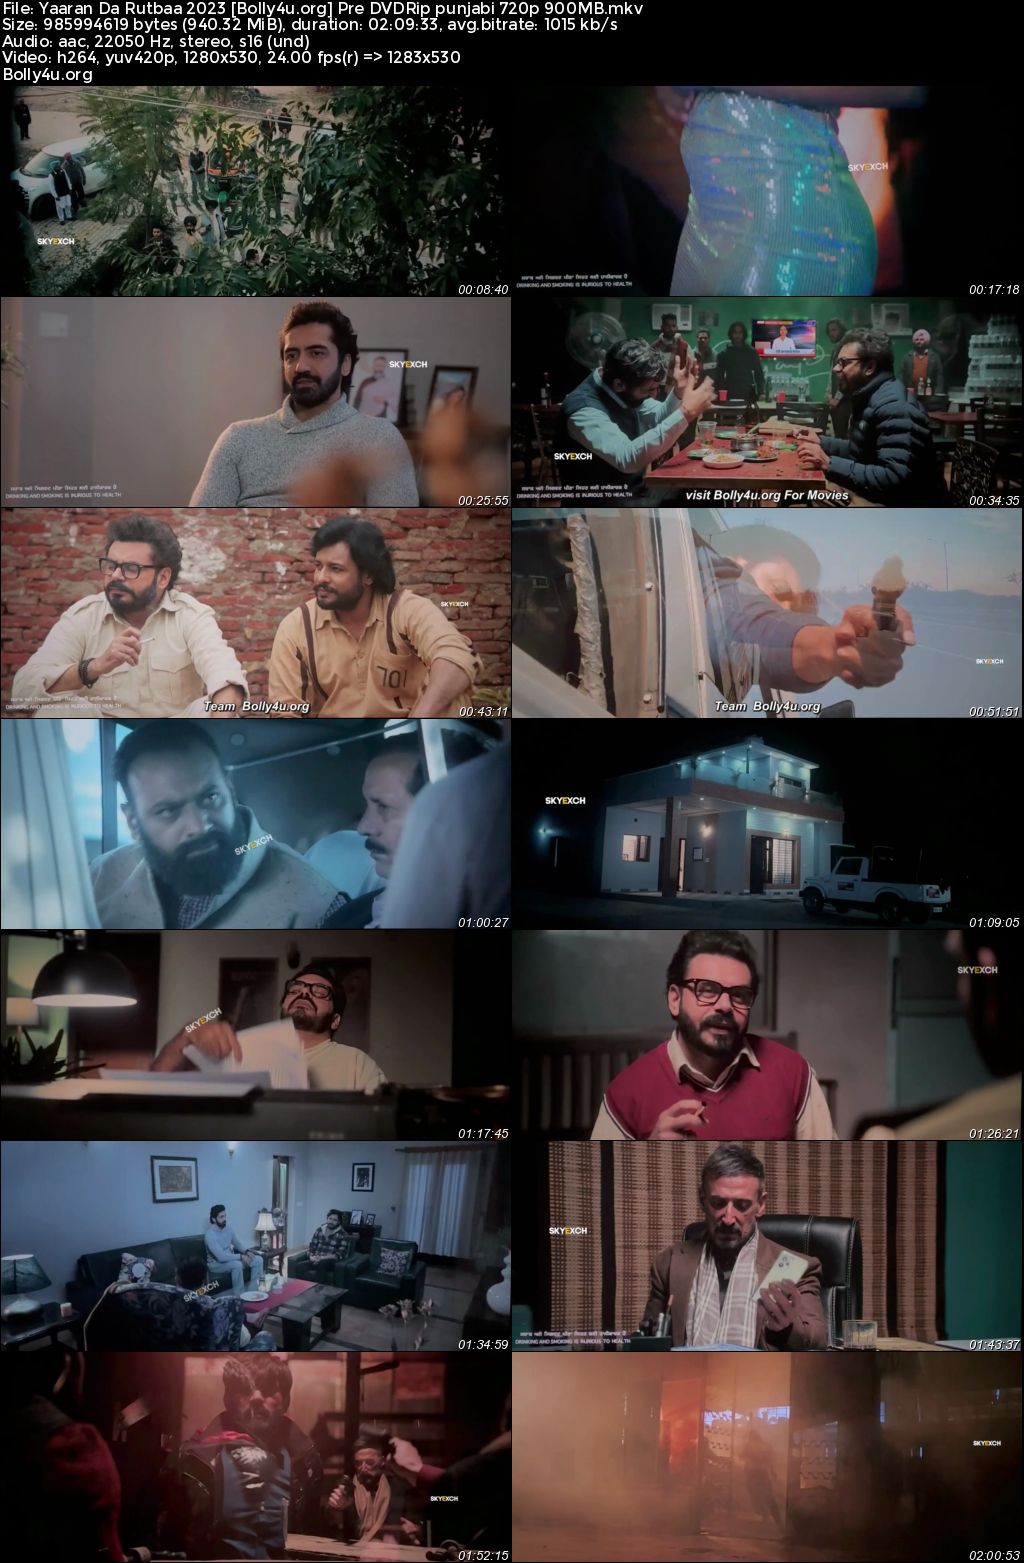 Yaaran Da Rutbaa 2023 Pre DVDRip Punjabi Full Movie Download 1080p 720p 480p